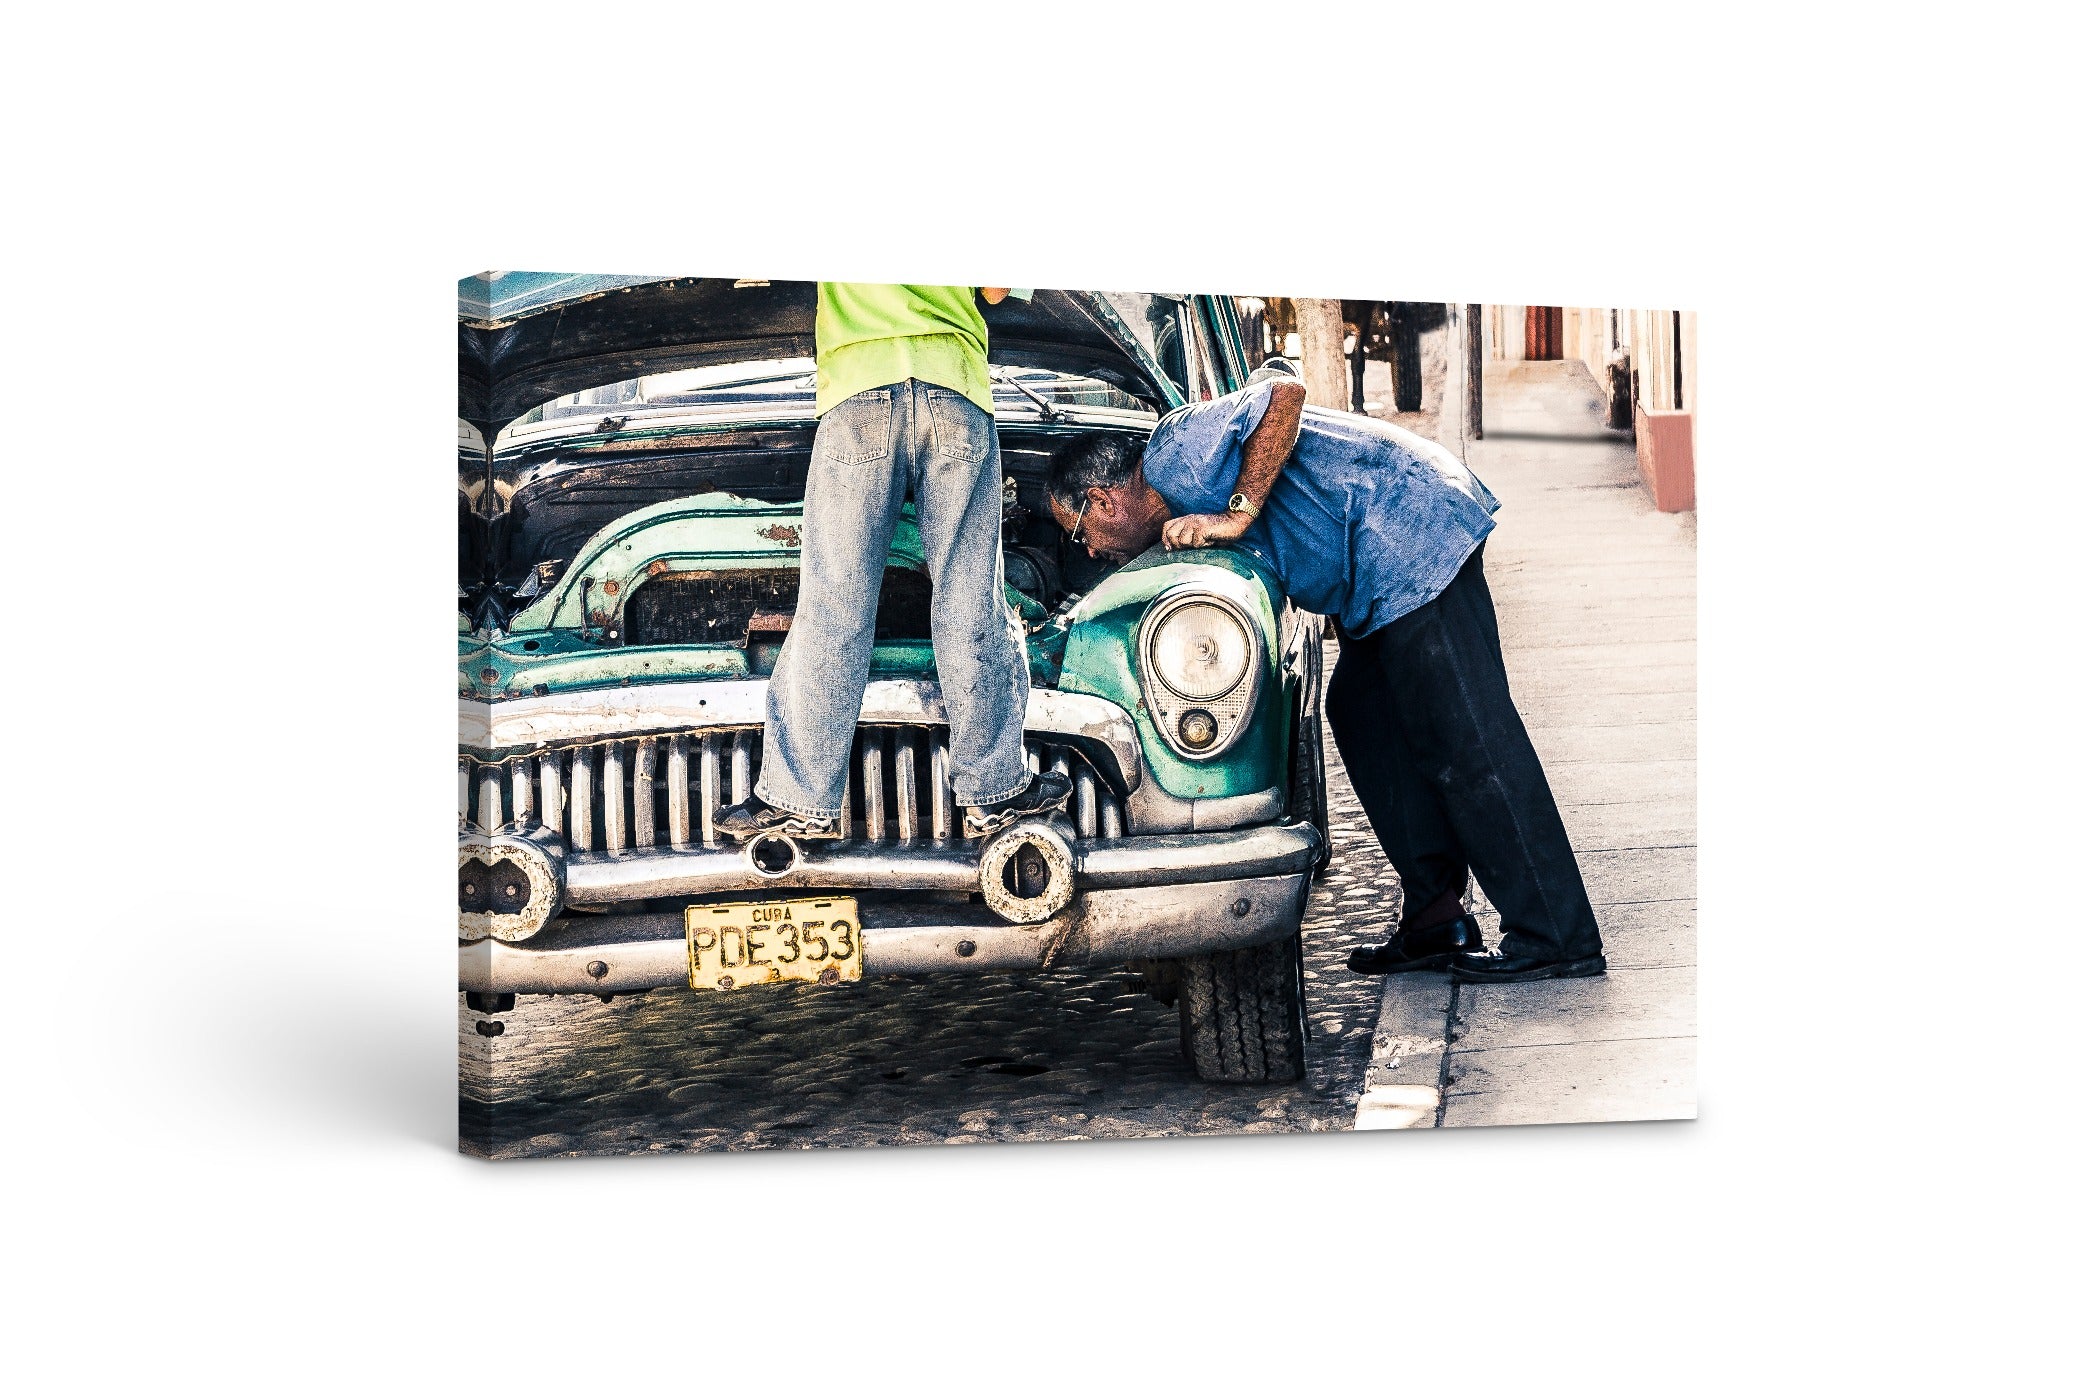 Cuban Car Repair 24x36"